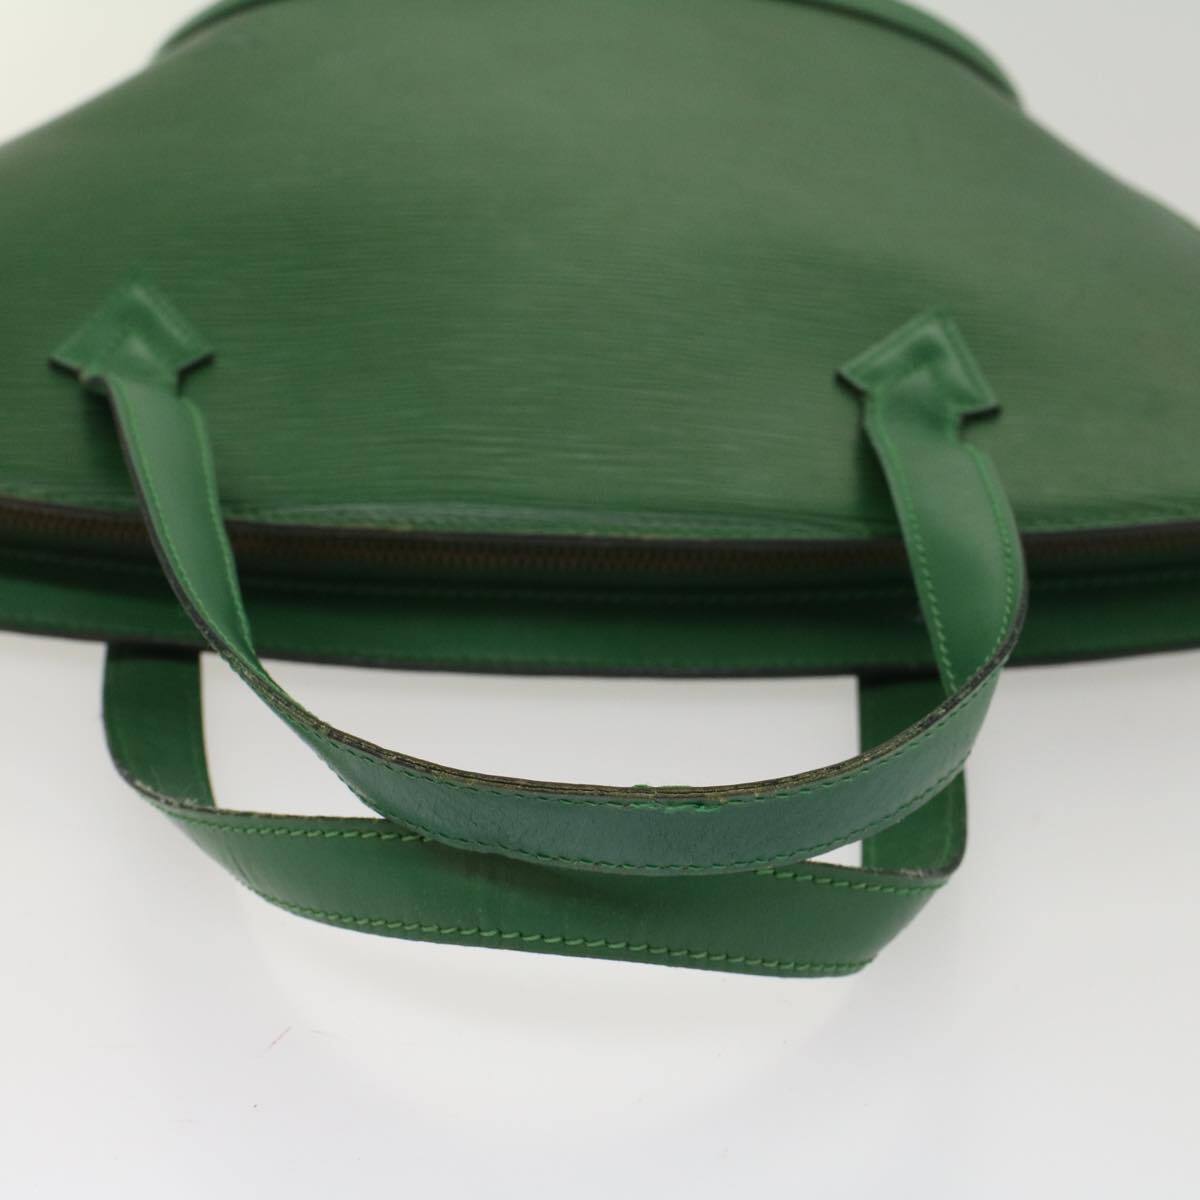 Louis Vuitton Epi Saint-Jacques PM Green Shoulder Bag